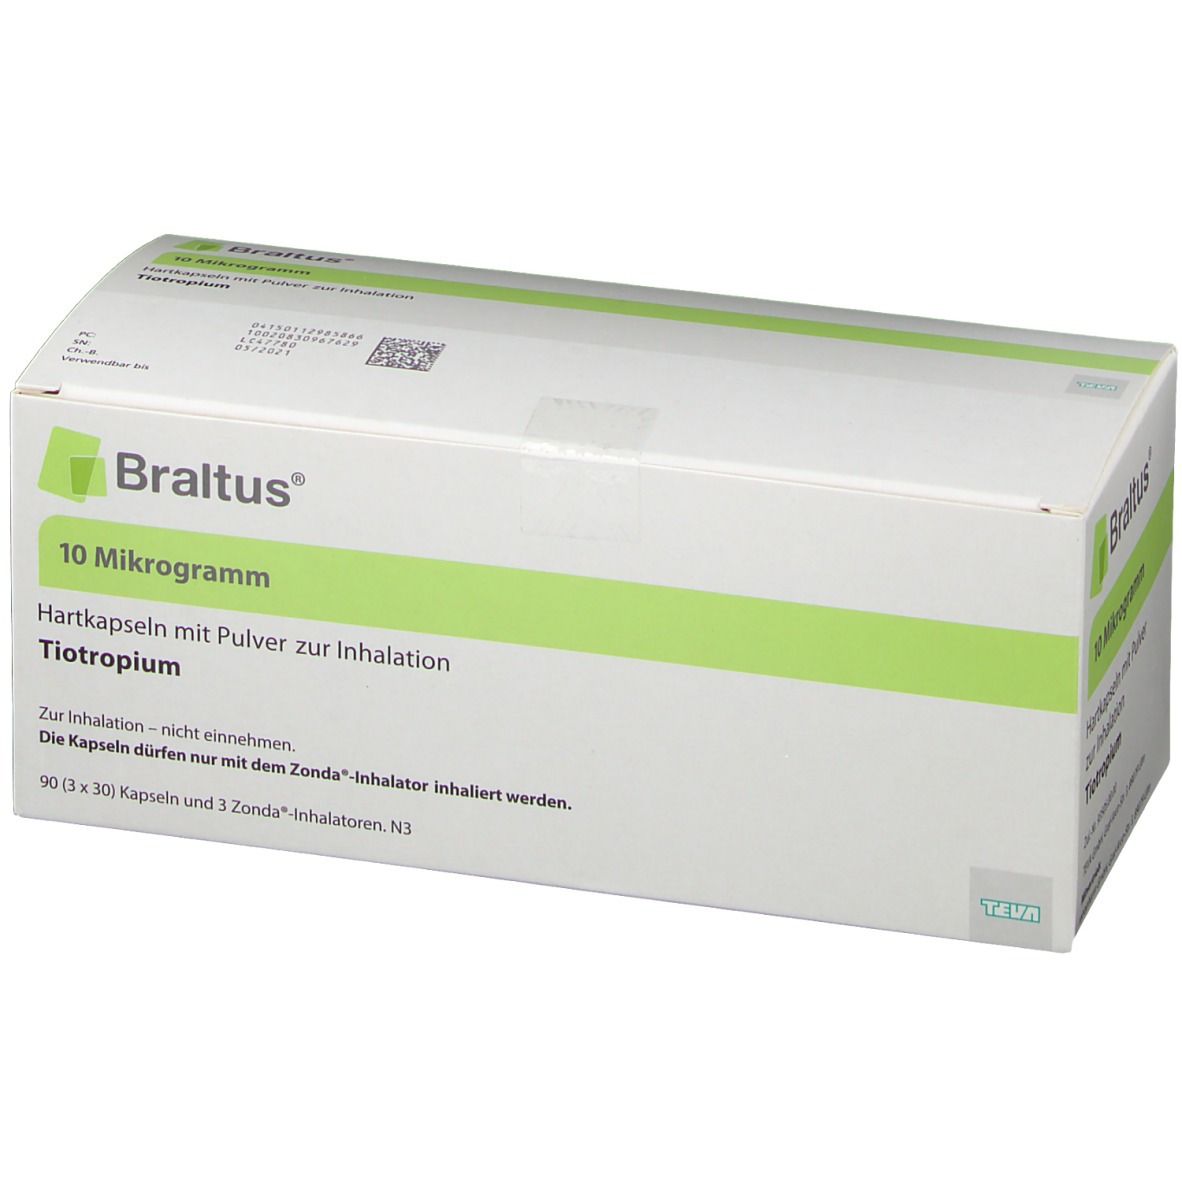 Braltus ®10 µg